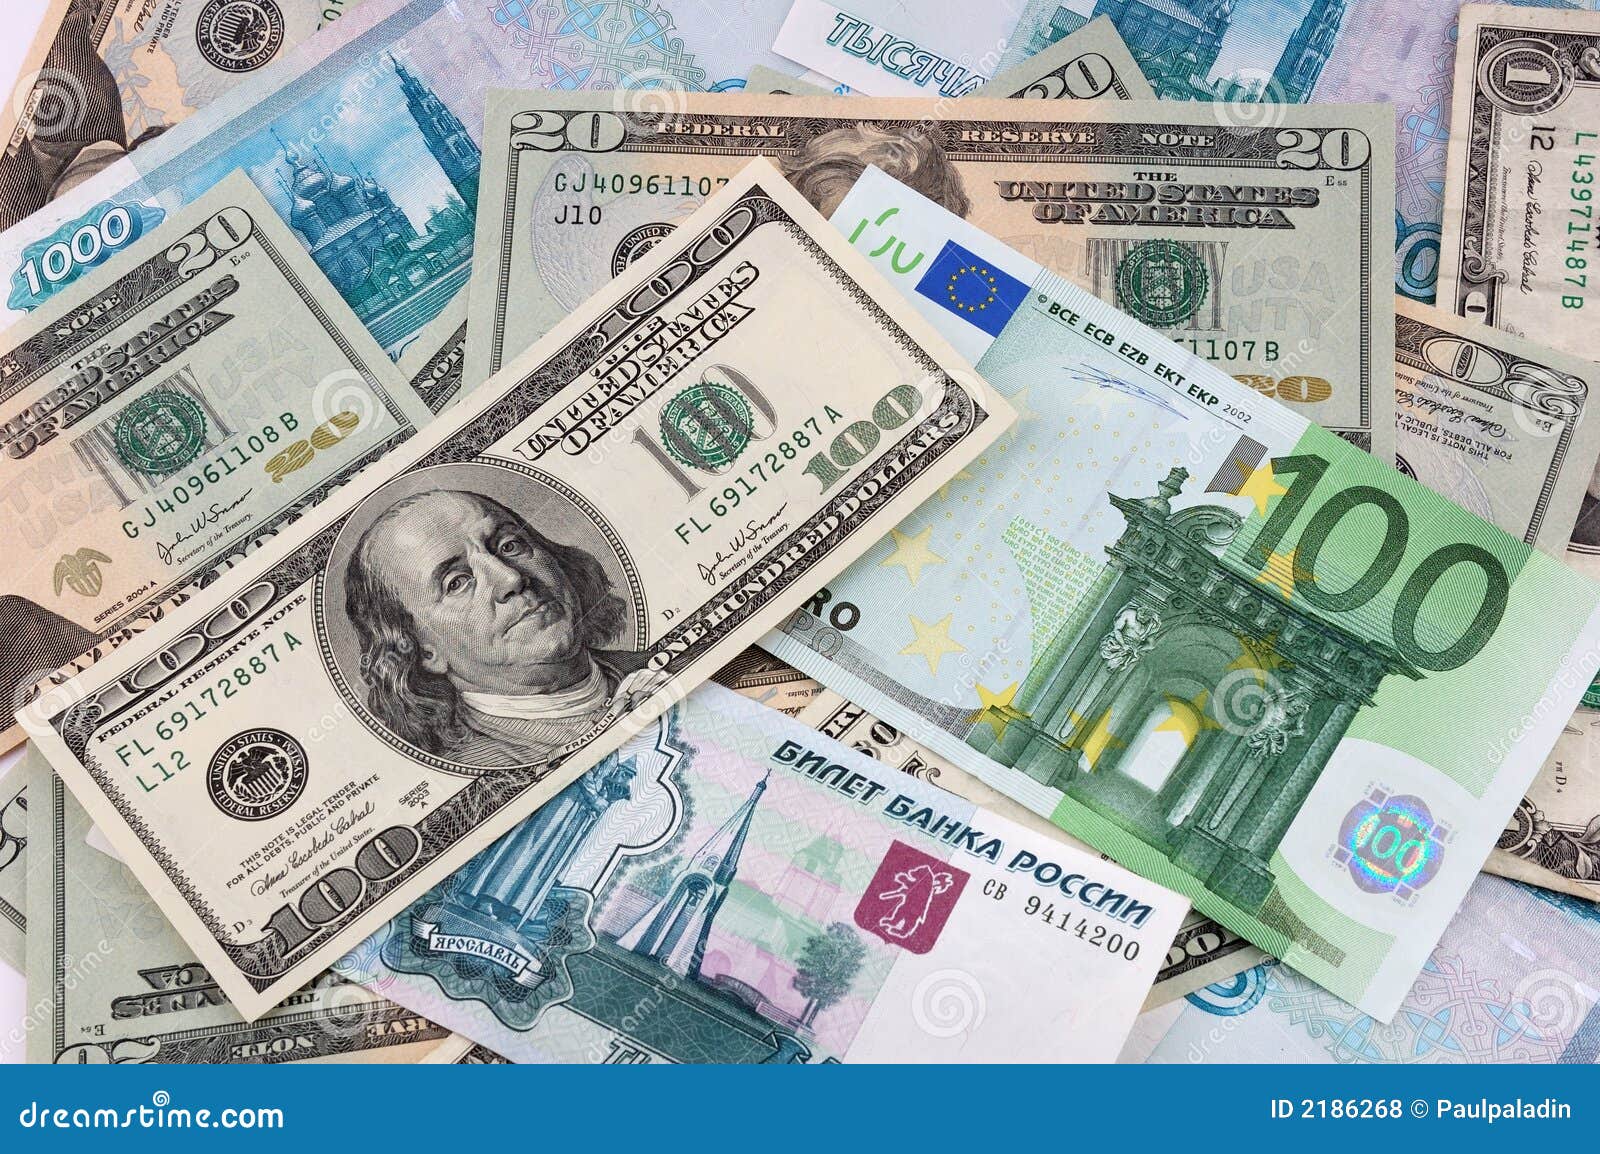 Доллары на евро в спб. Доллар и евро. Доллар и евро рисунок. Купюры евро и доллара. Купюры евро доллары рубли.